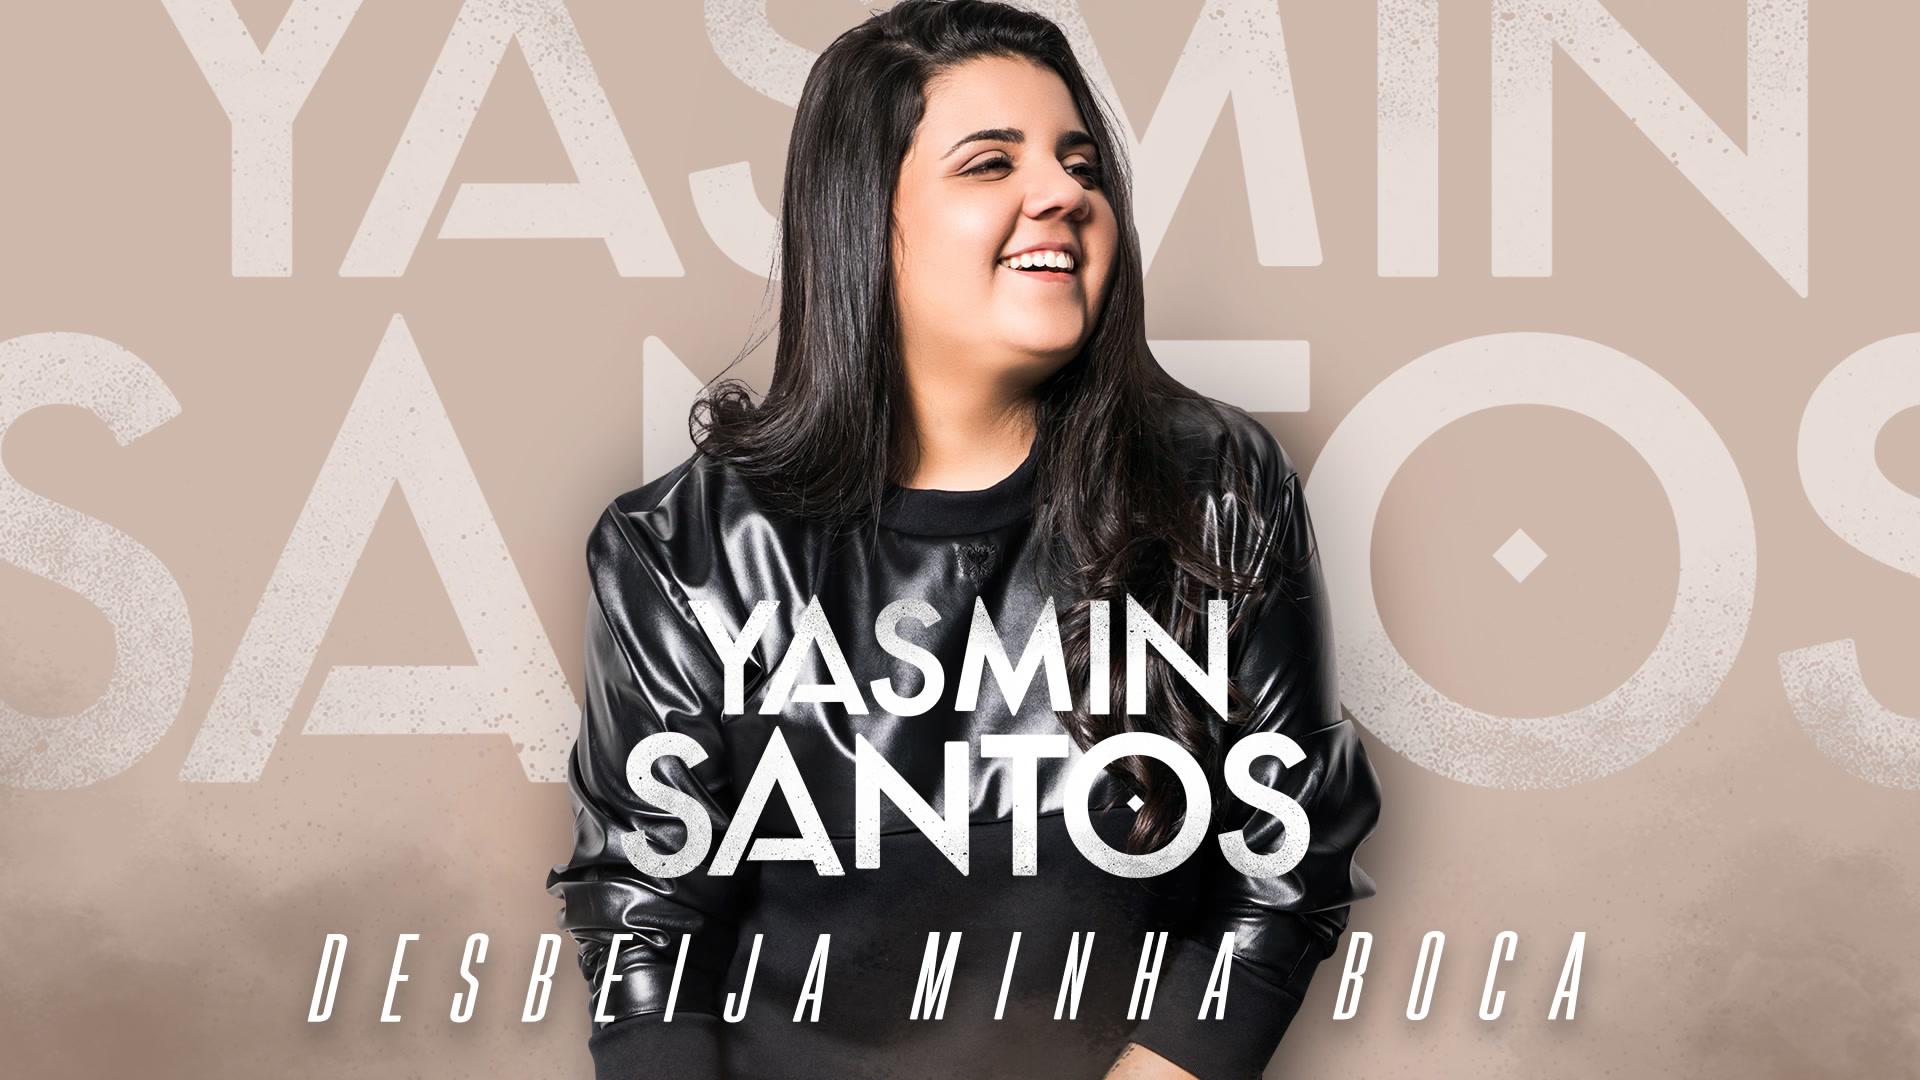 Yasmin Santos - Desbeija Minha Boca (Pseudo Video)